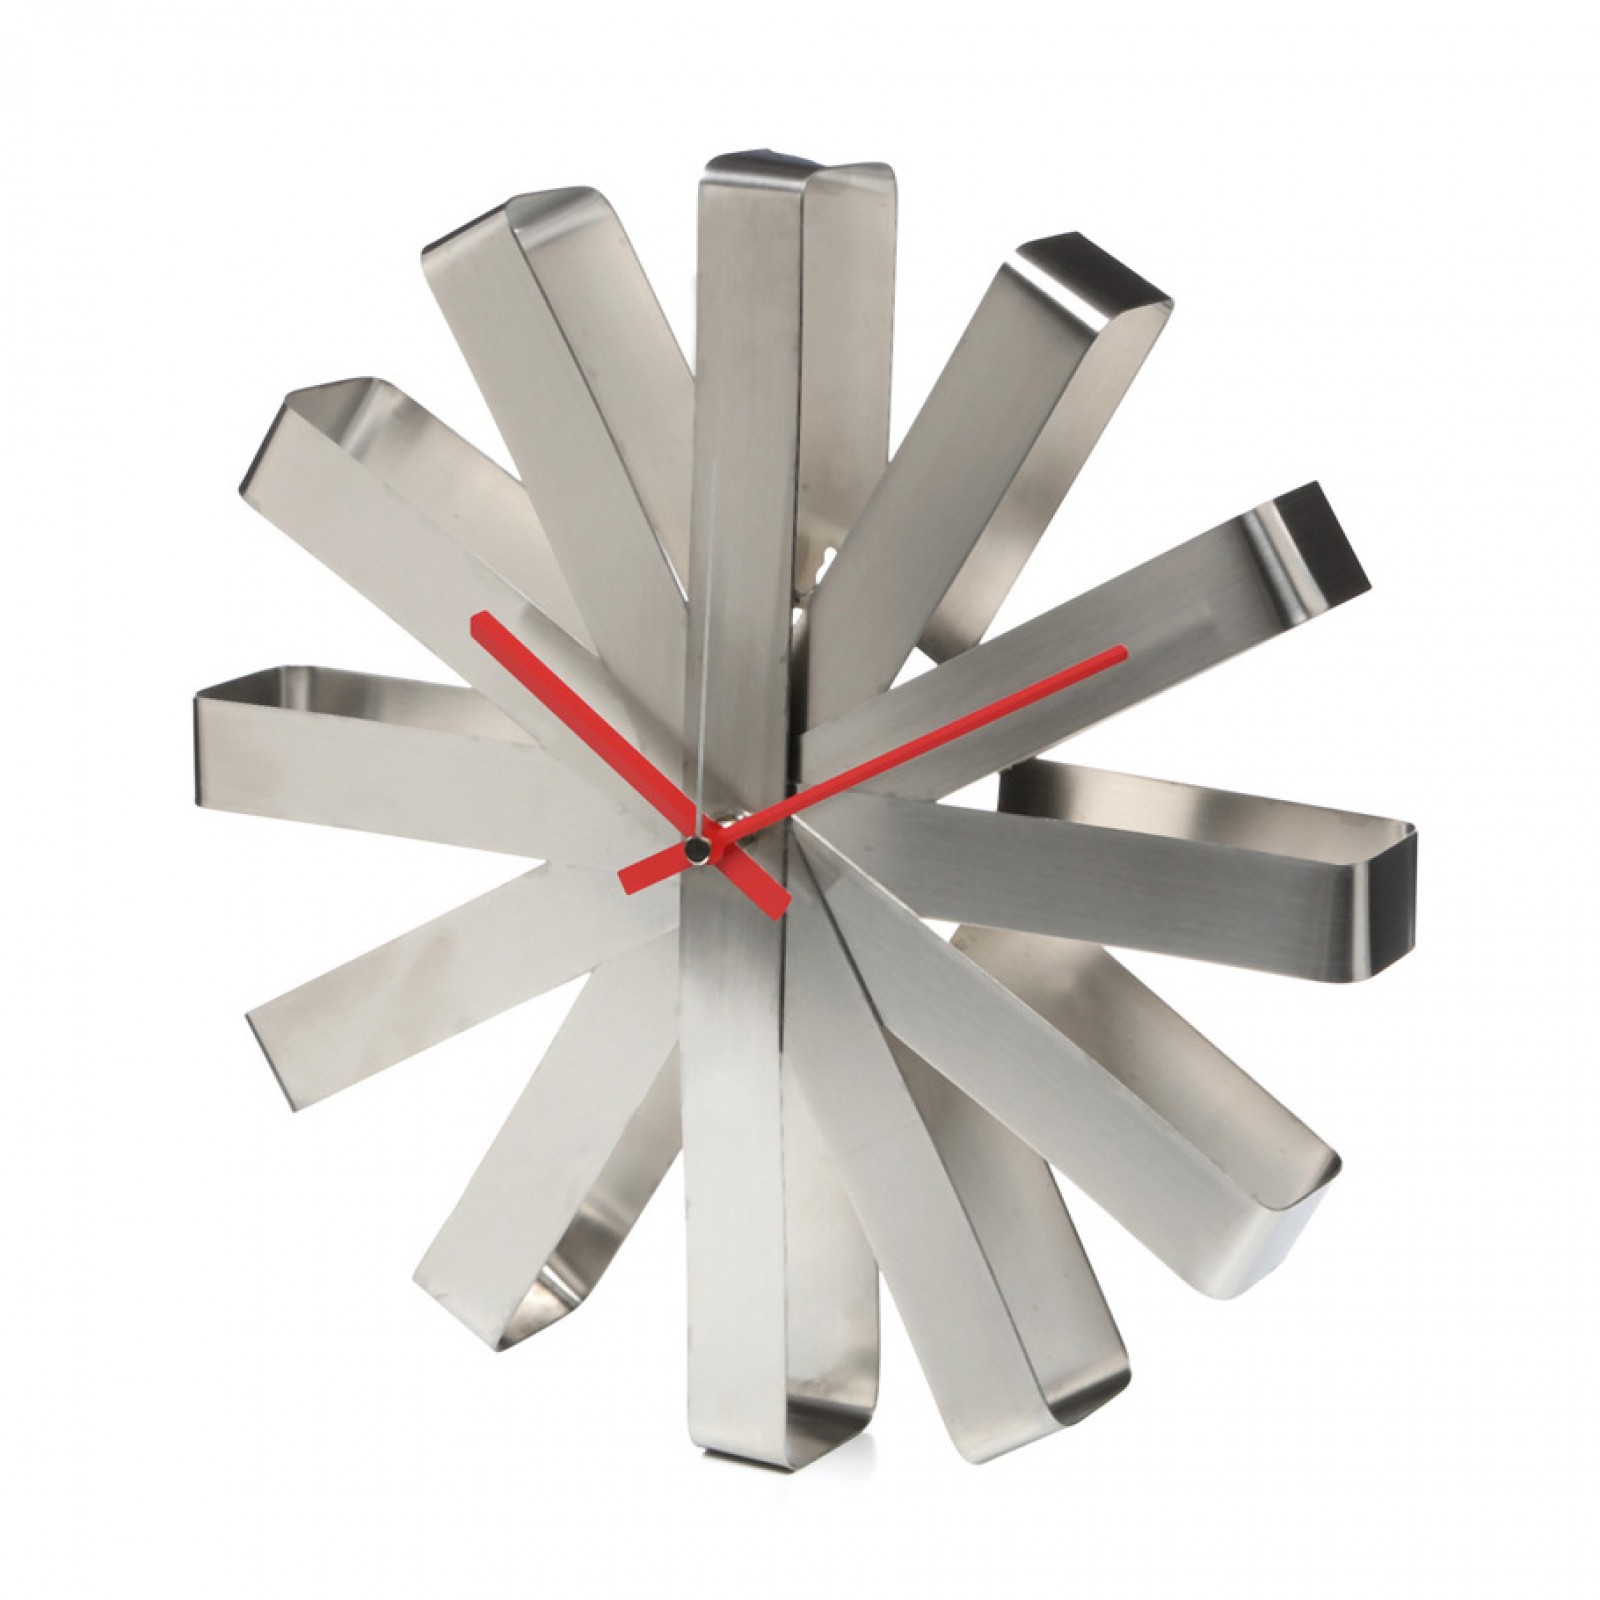 Ribbon Wall Clock (Steel) - Umbra